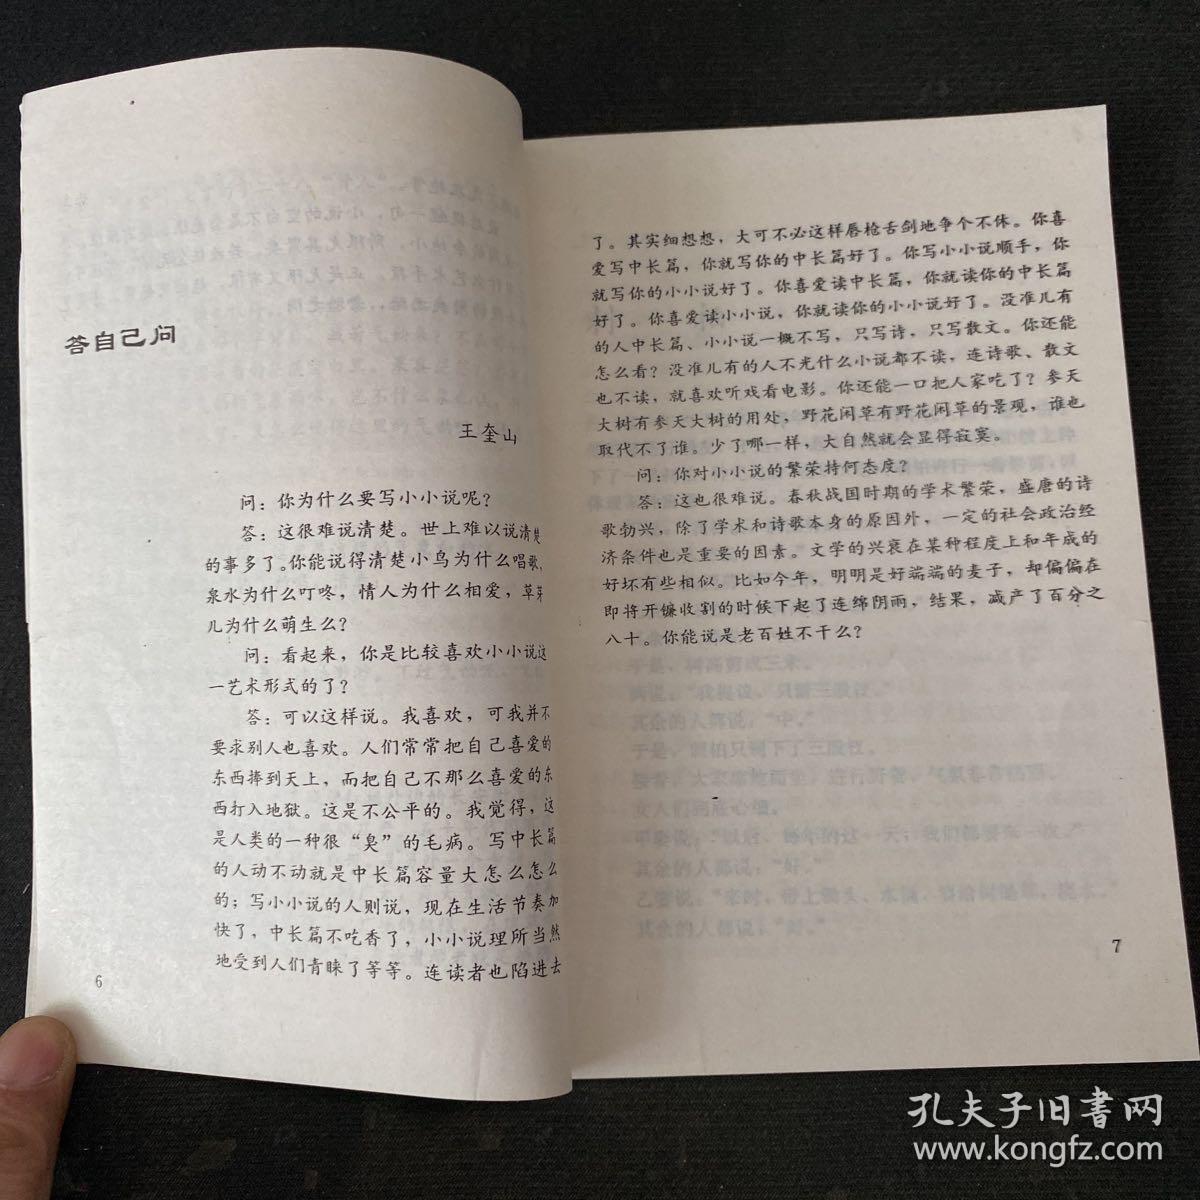 中国当代小小说作家丛书 第二集 加尔各达草帽